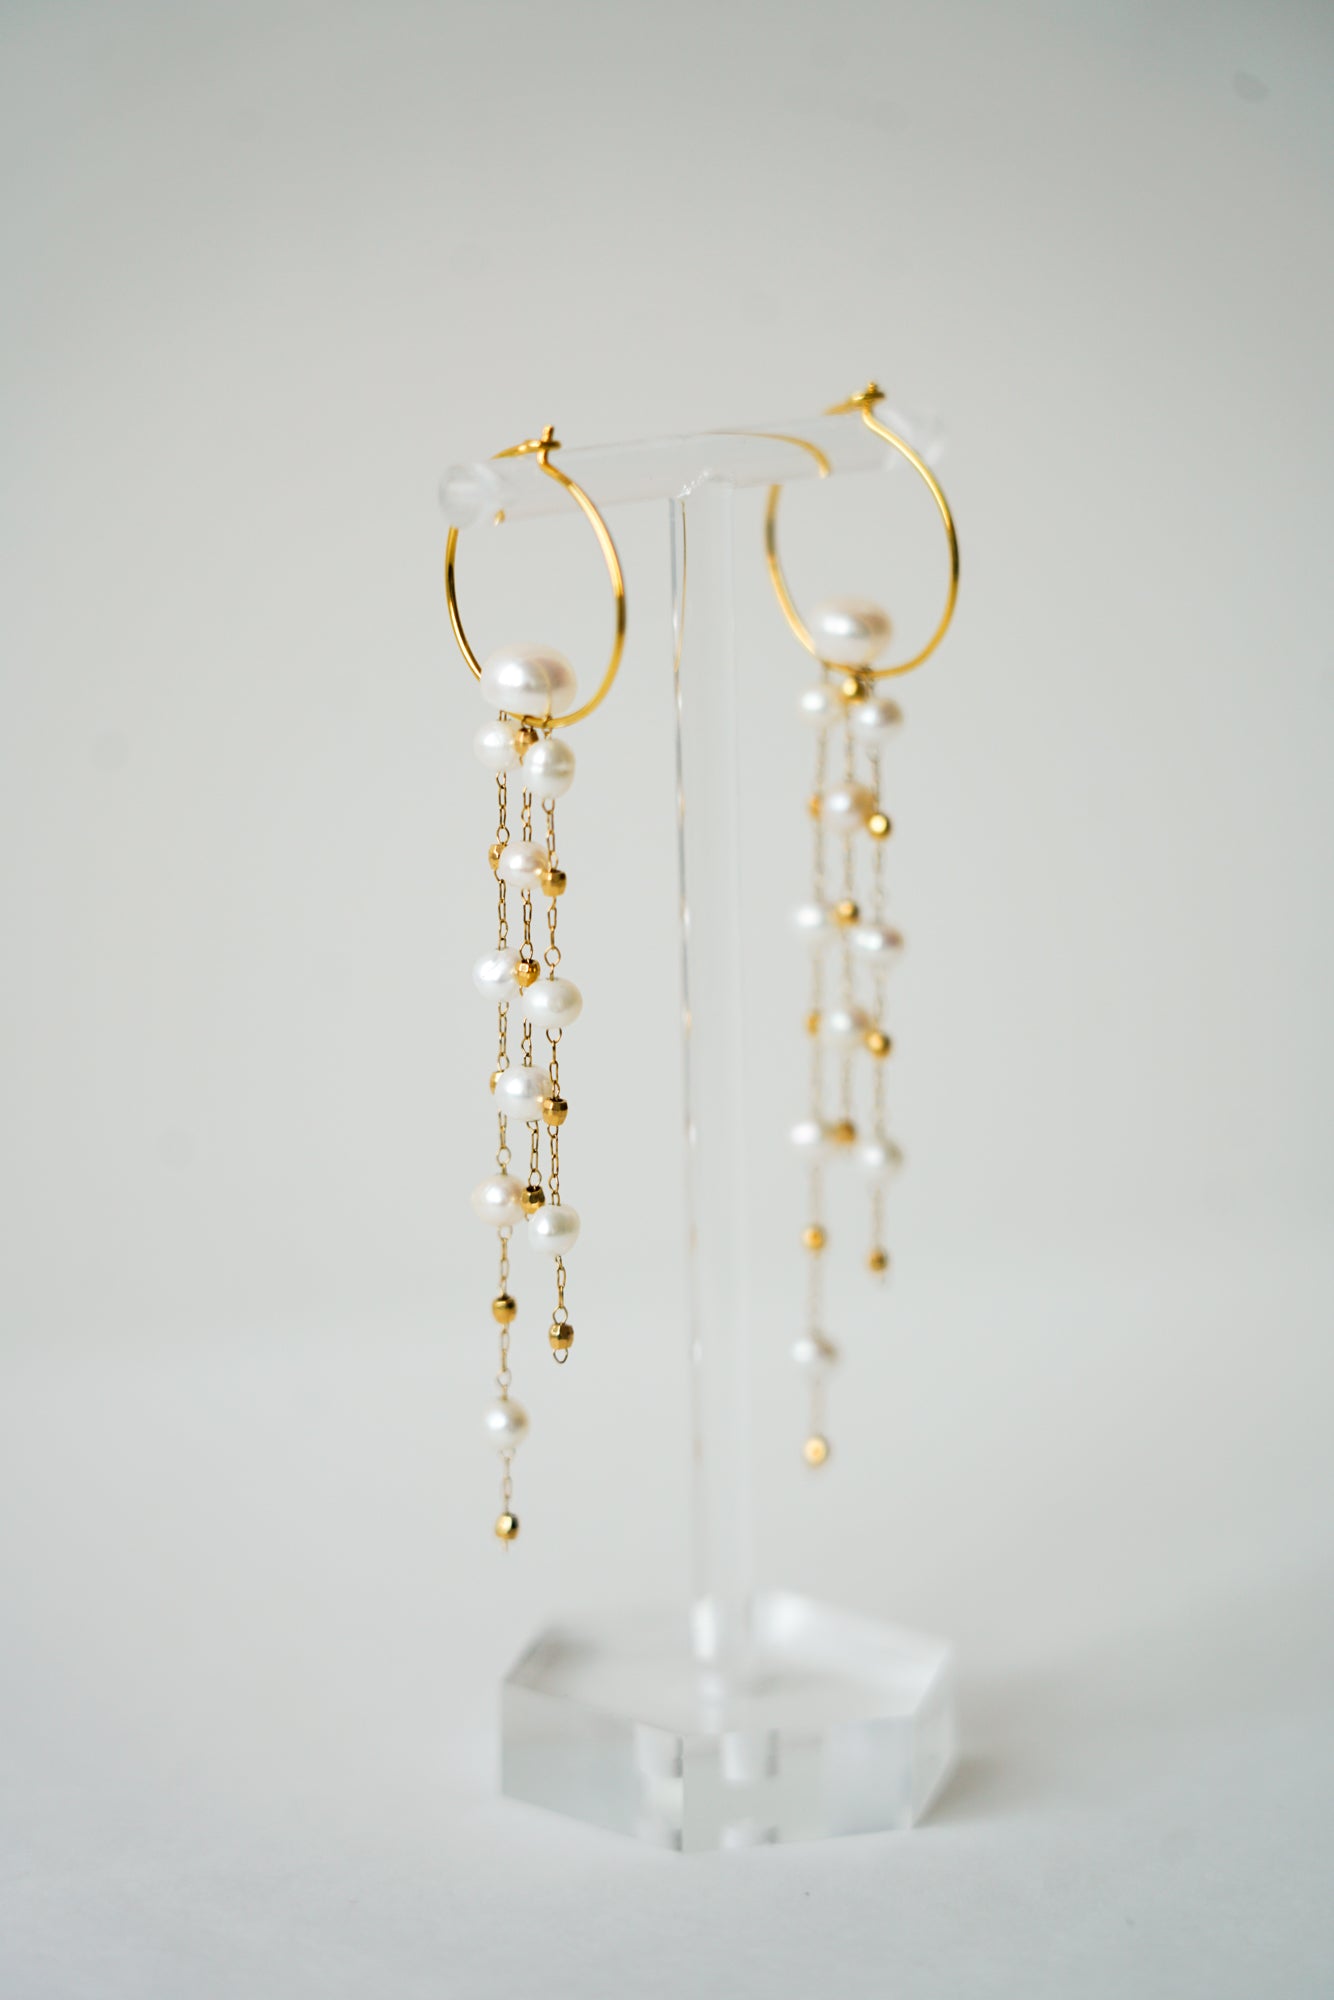 boucles d'oreilles pour une mariée sur un portant à bijou fabriqué en chaine de perles naturelles et un forme arrondi